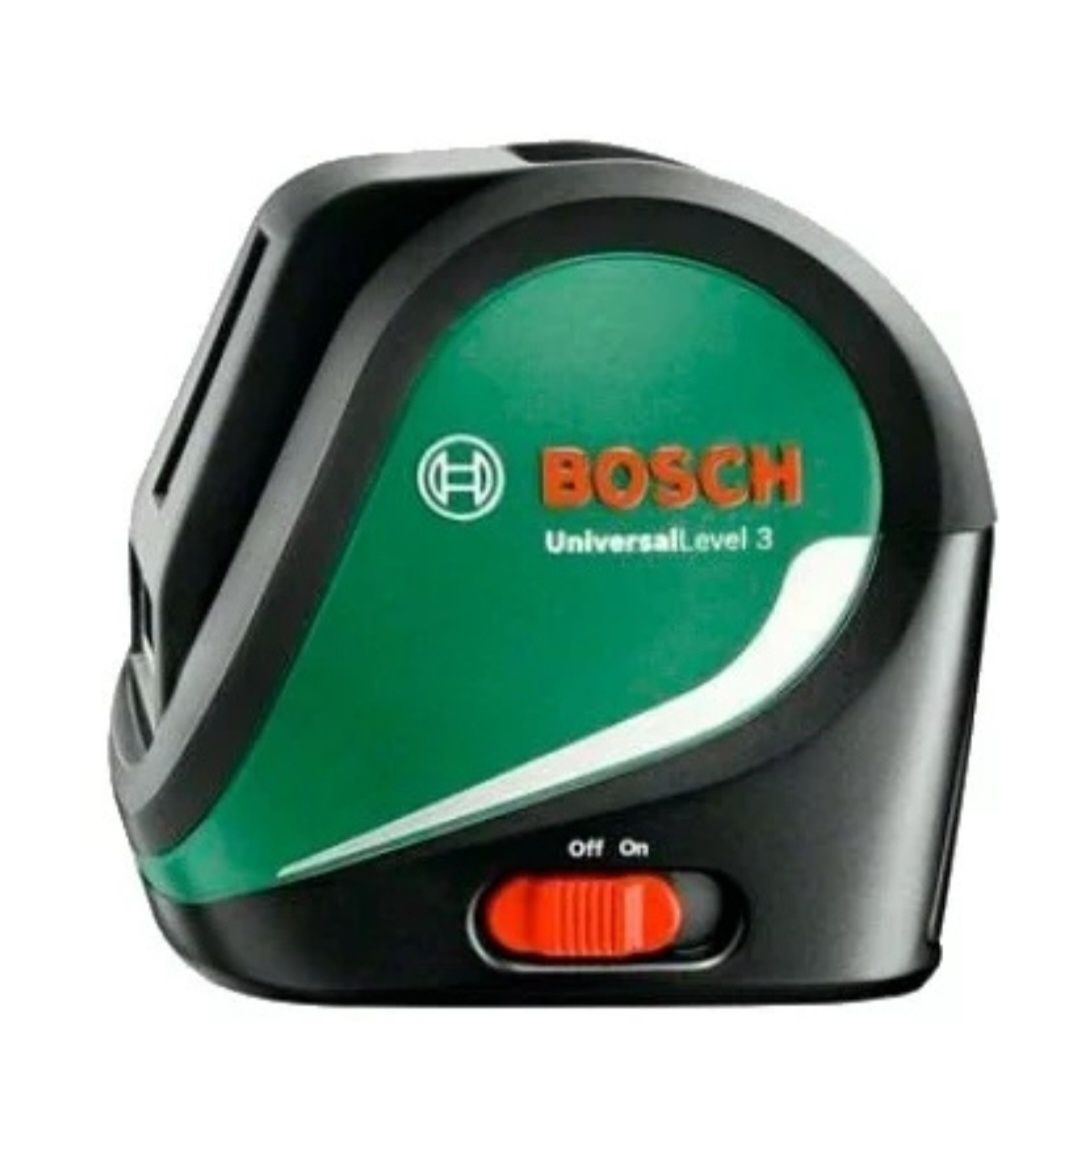 Лазерный уровень Bosch линейный UniversalLevel 3 Set цена договорная